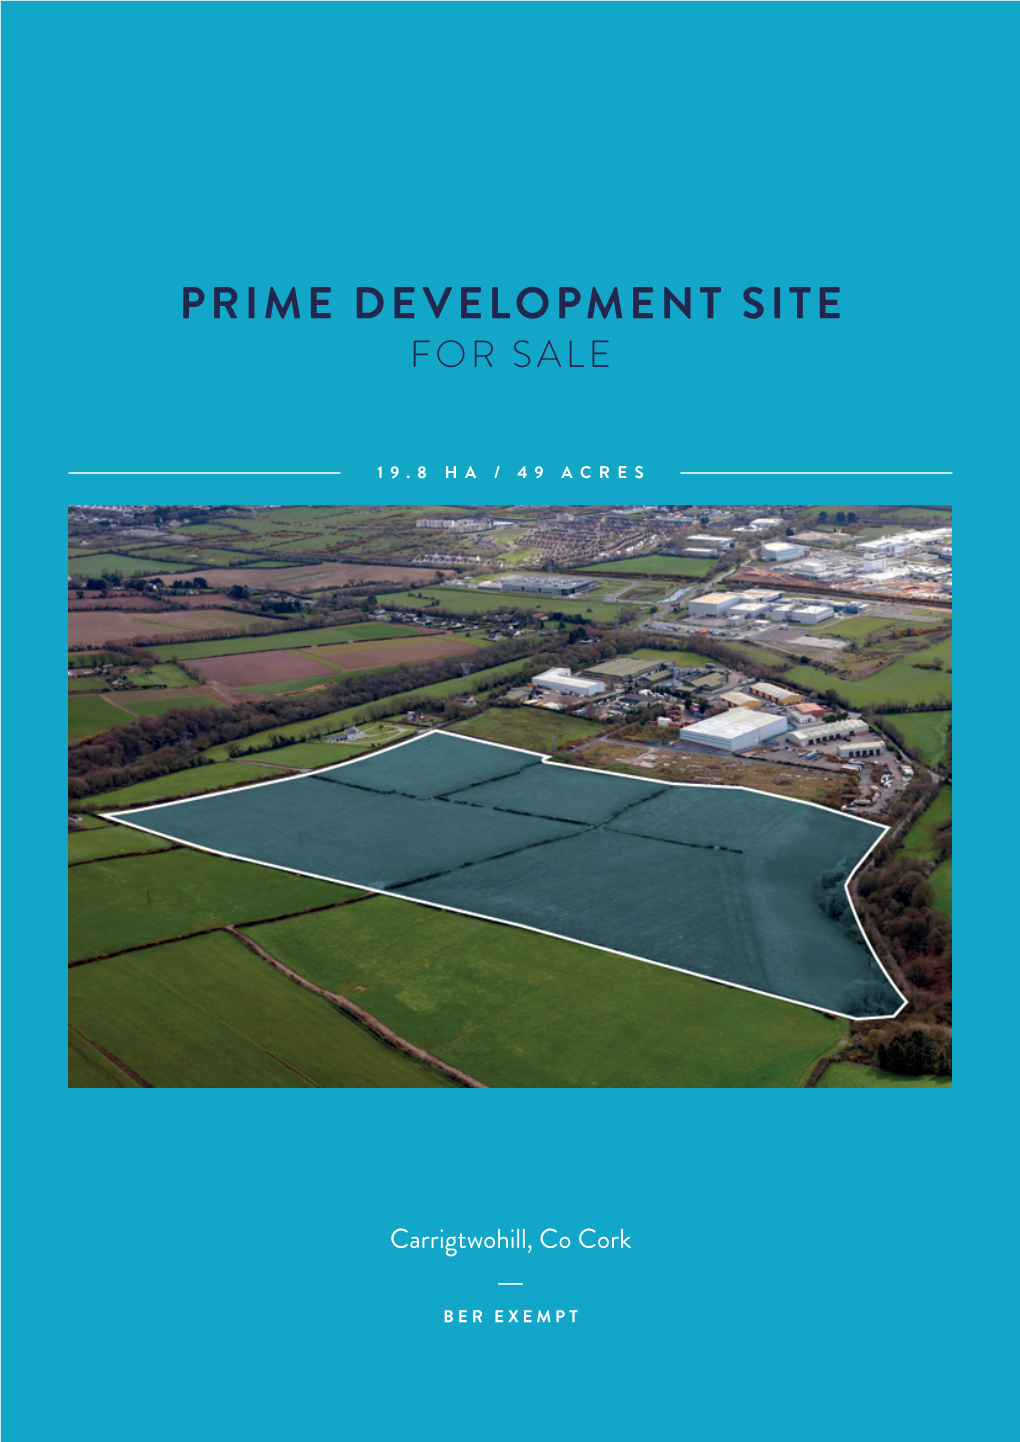 Prime Development Site for Sale